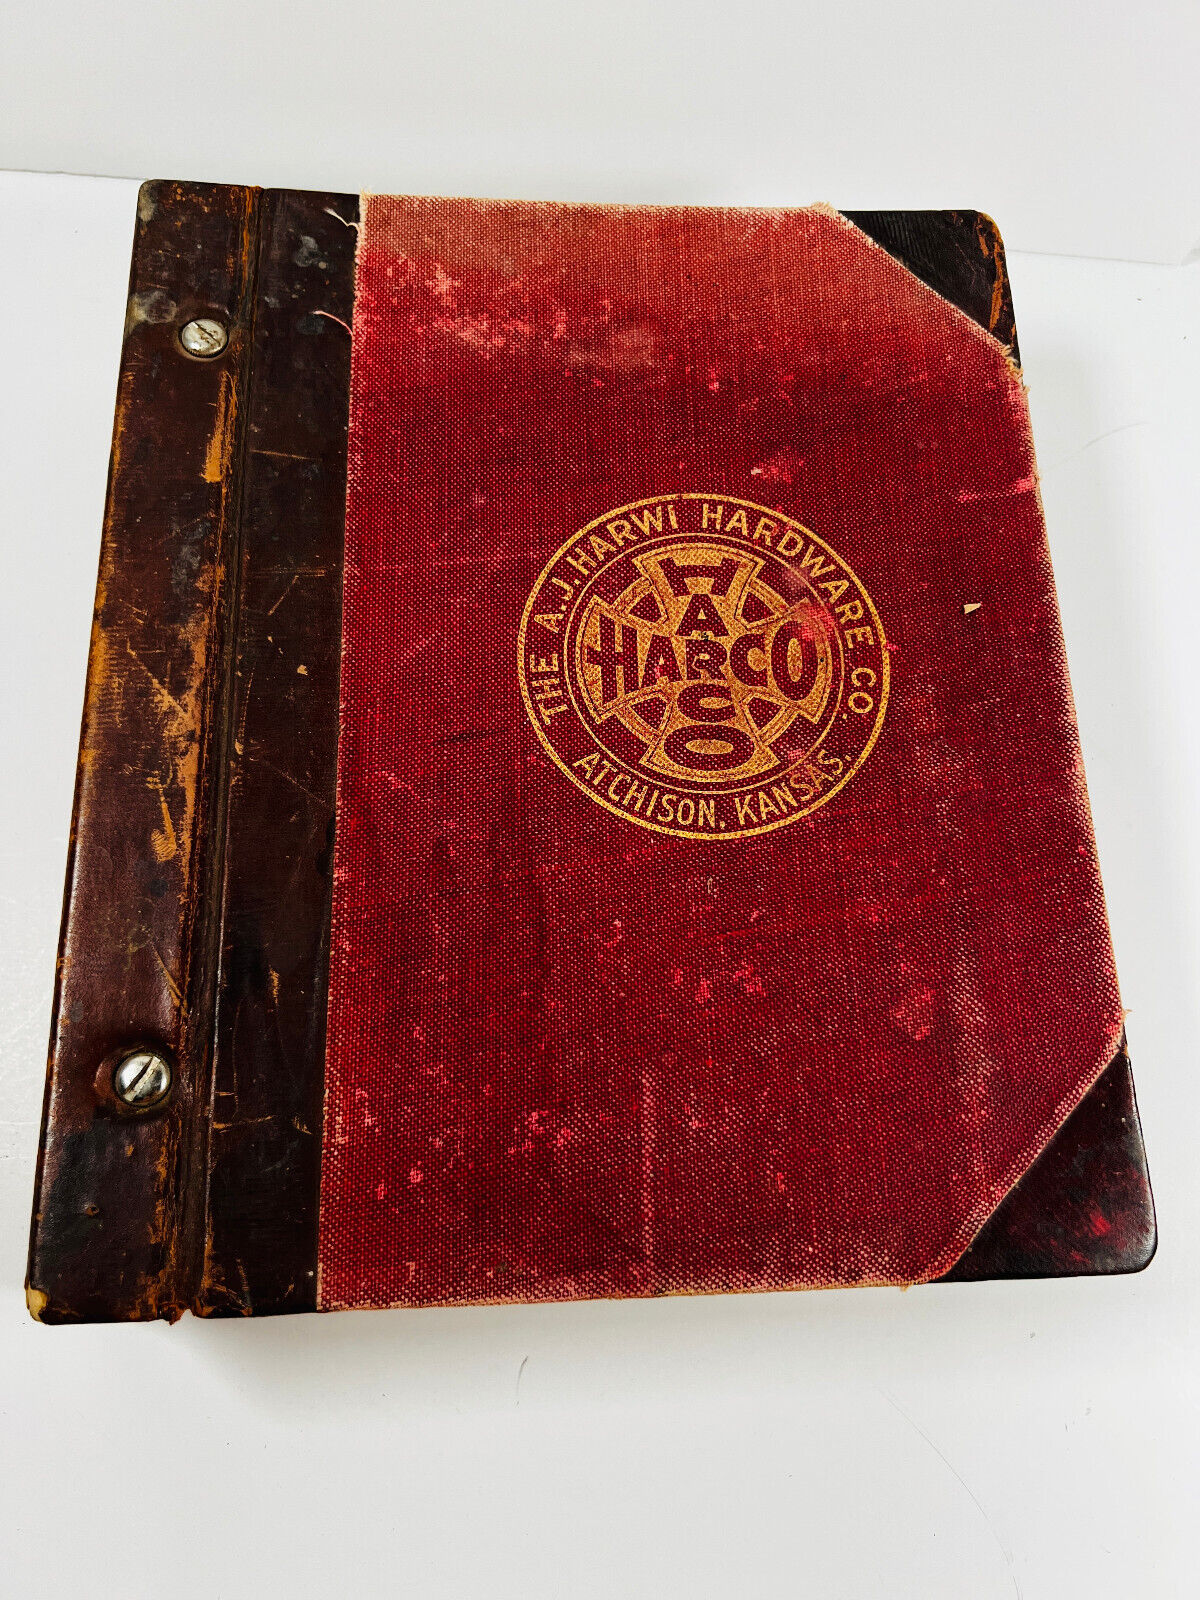 Amazing 1800\'s AJ Harwi Harco Hardware Housewares Catalog Atchison KS